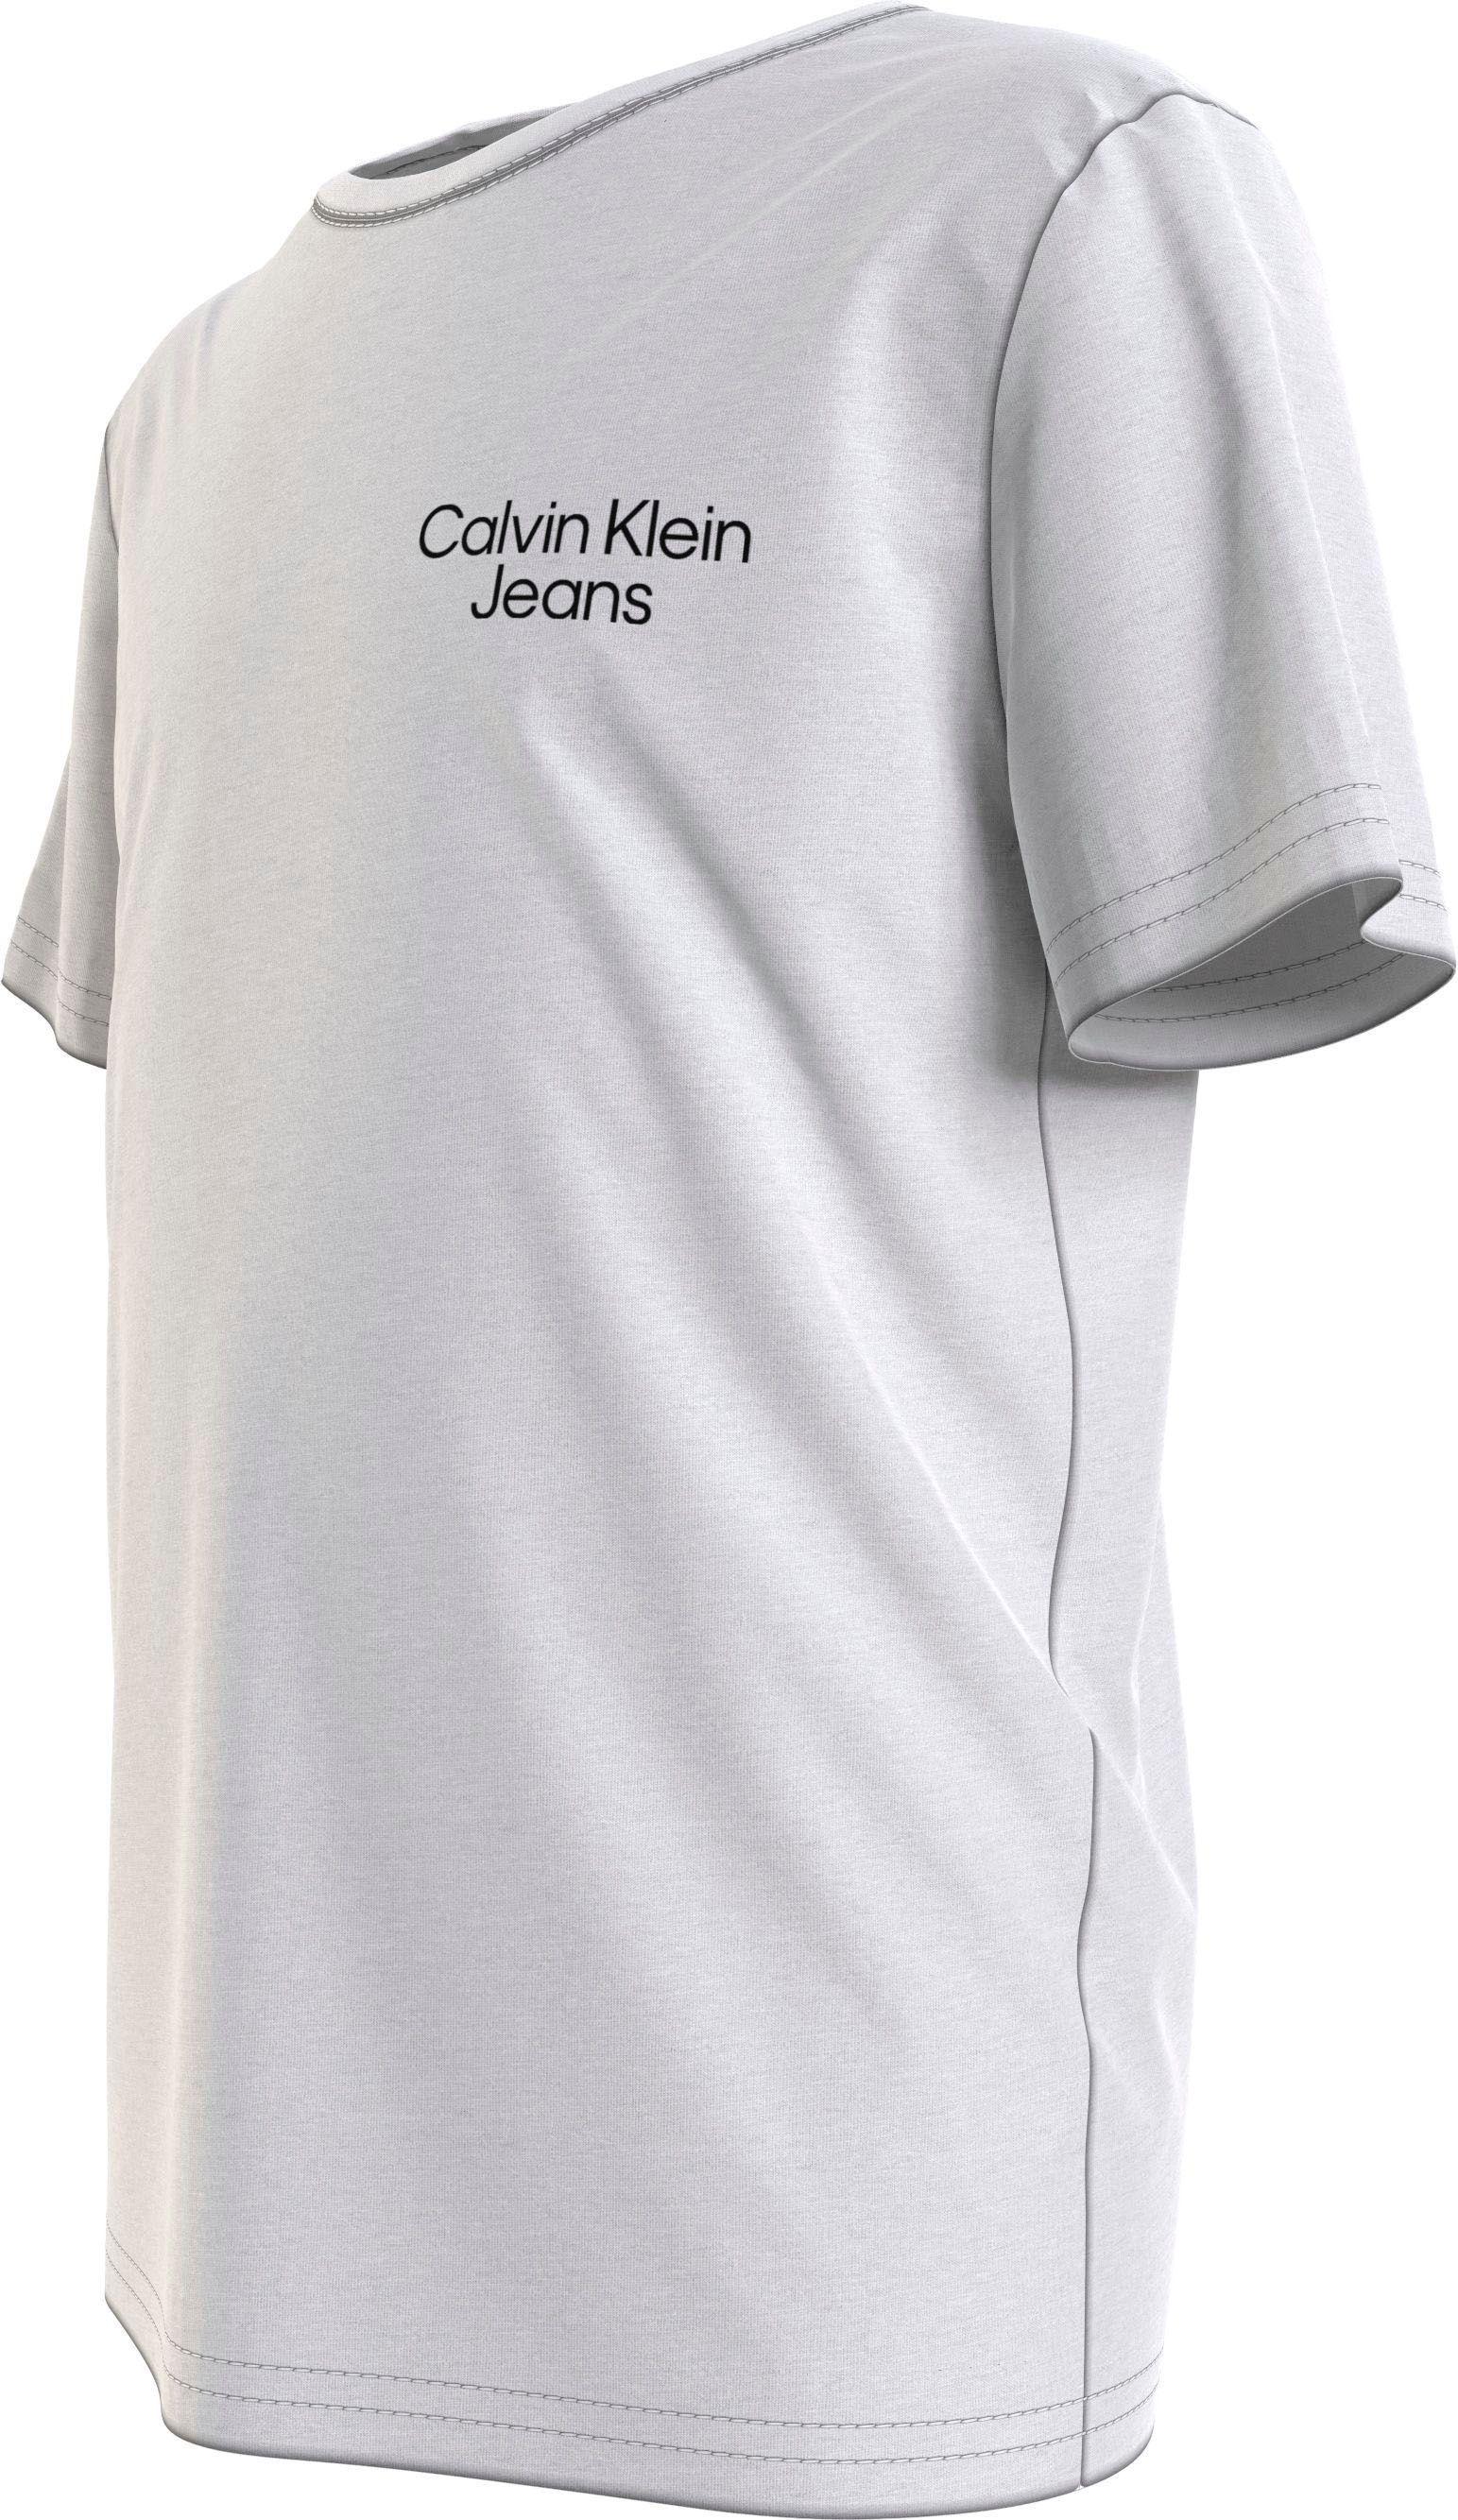 T-Shirt, Jeans Klein kaufen Calvin auf mit Klein der Ärmel am und Brust Calvin Logoschriftzug